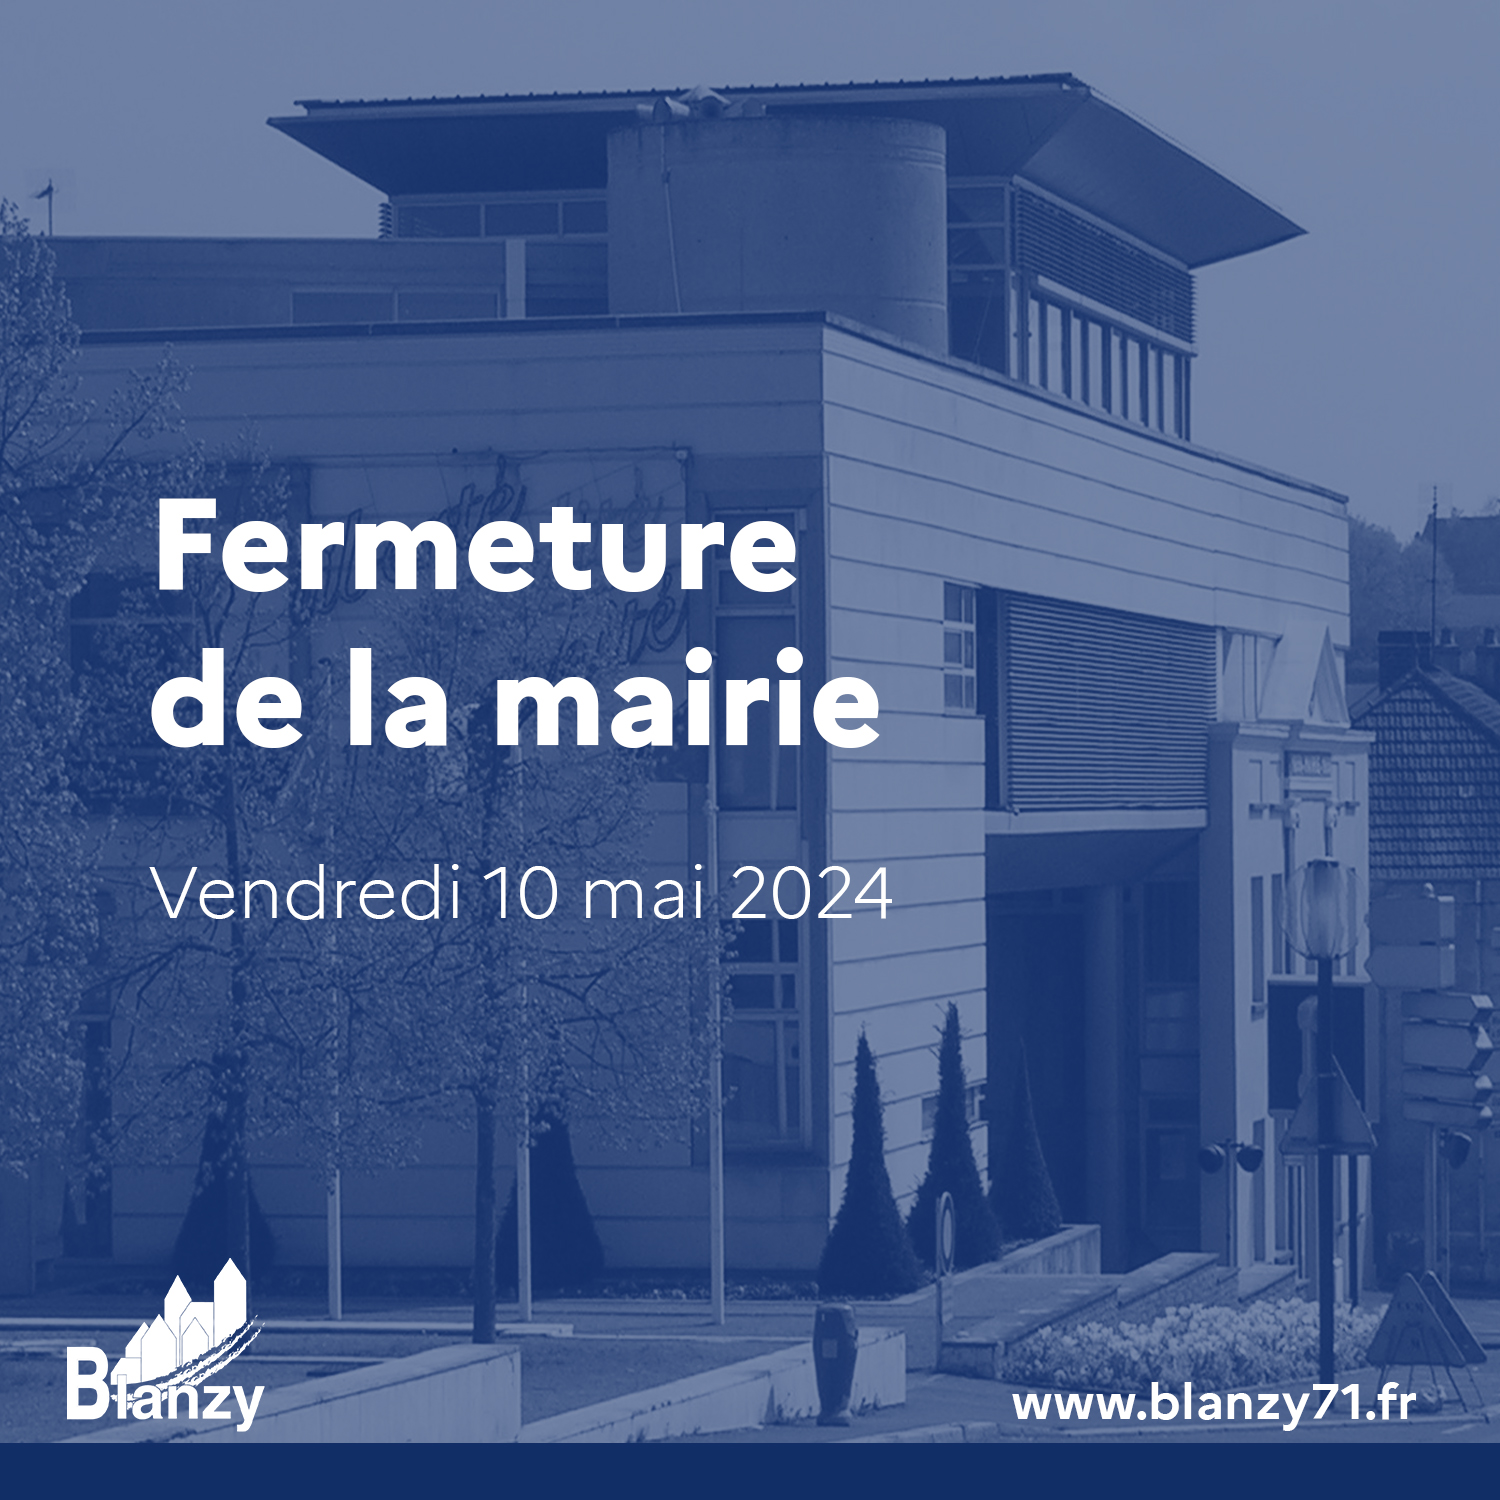 Fermeture mairie Blanzy mai 2024